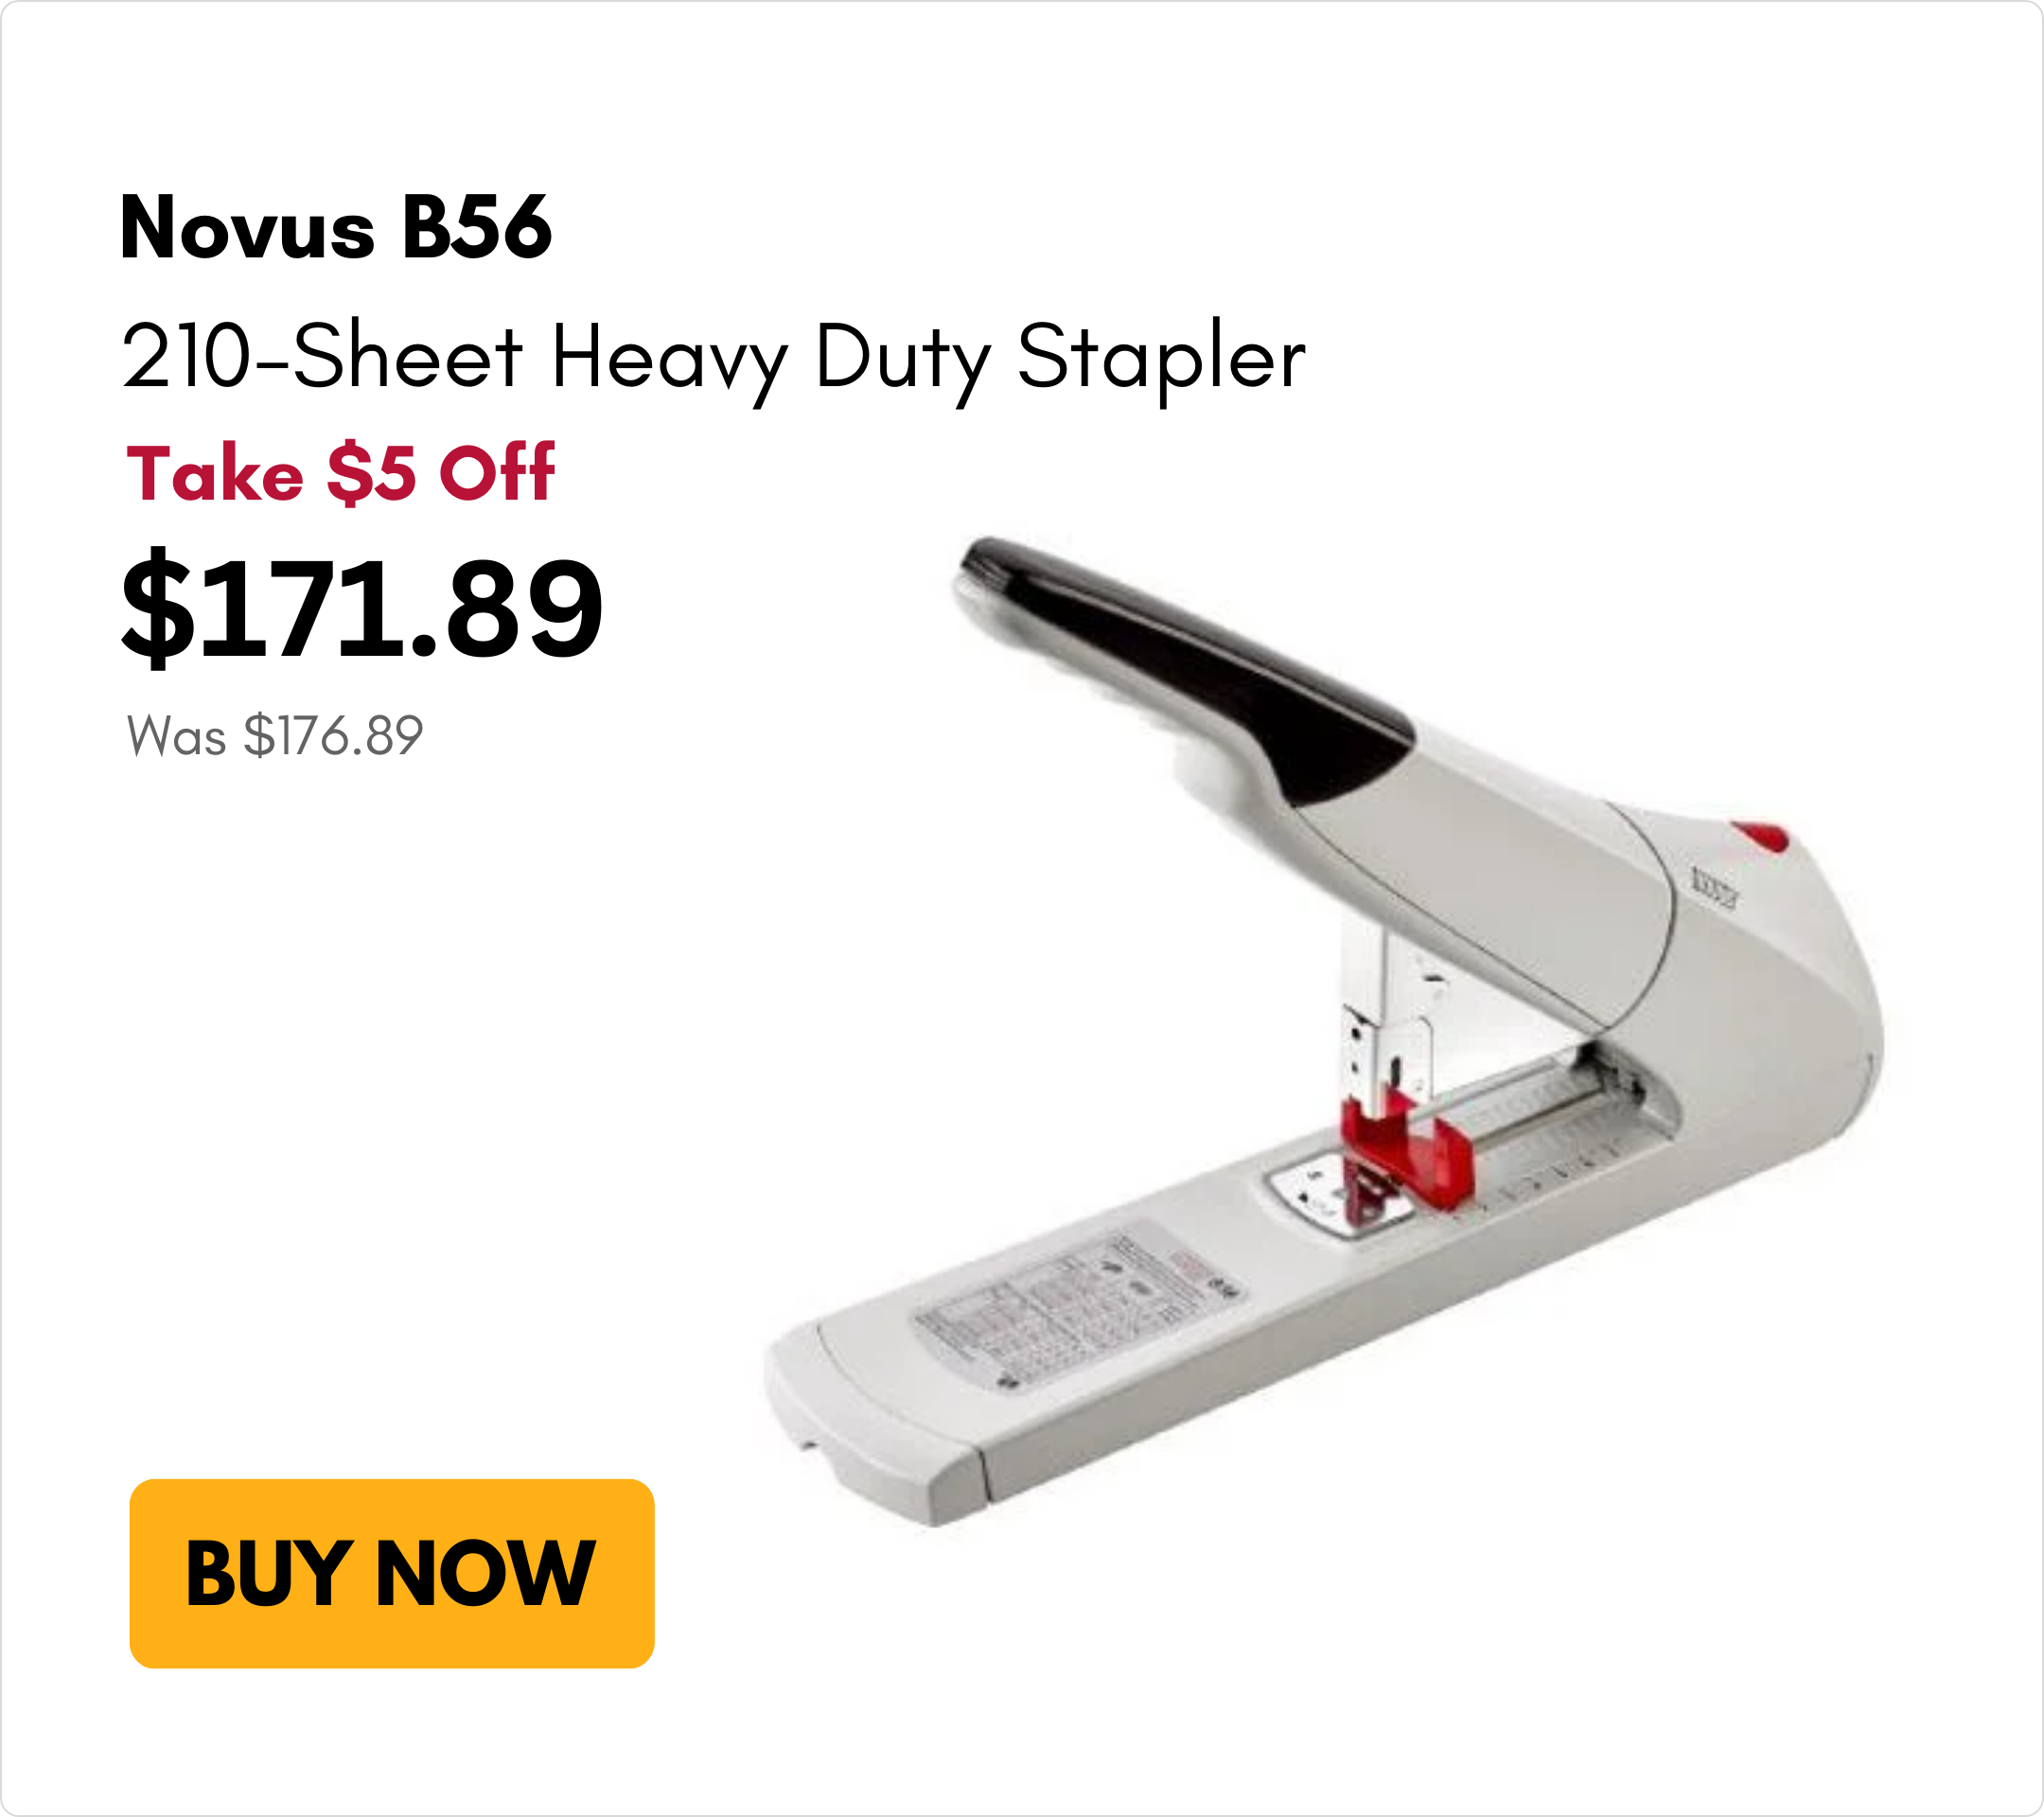 Novus B56 210-Sheet Heavy Duty Stapler on sale for $5 off on MyBinding.com